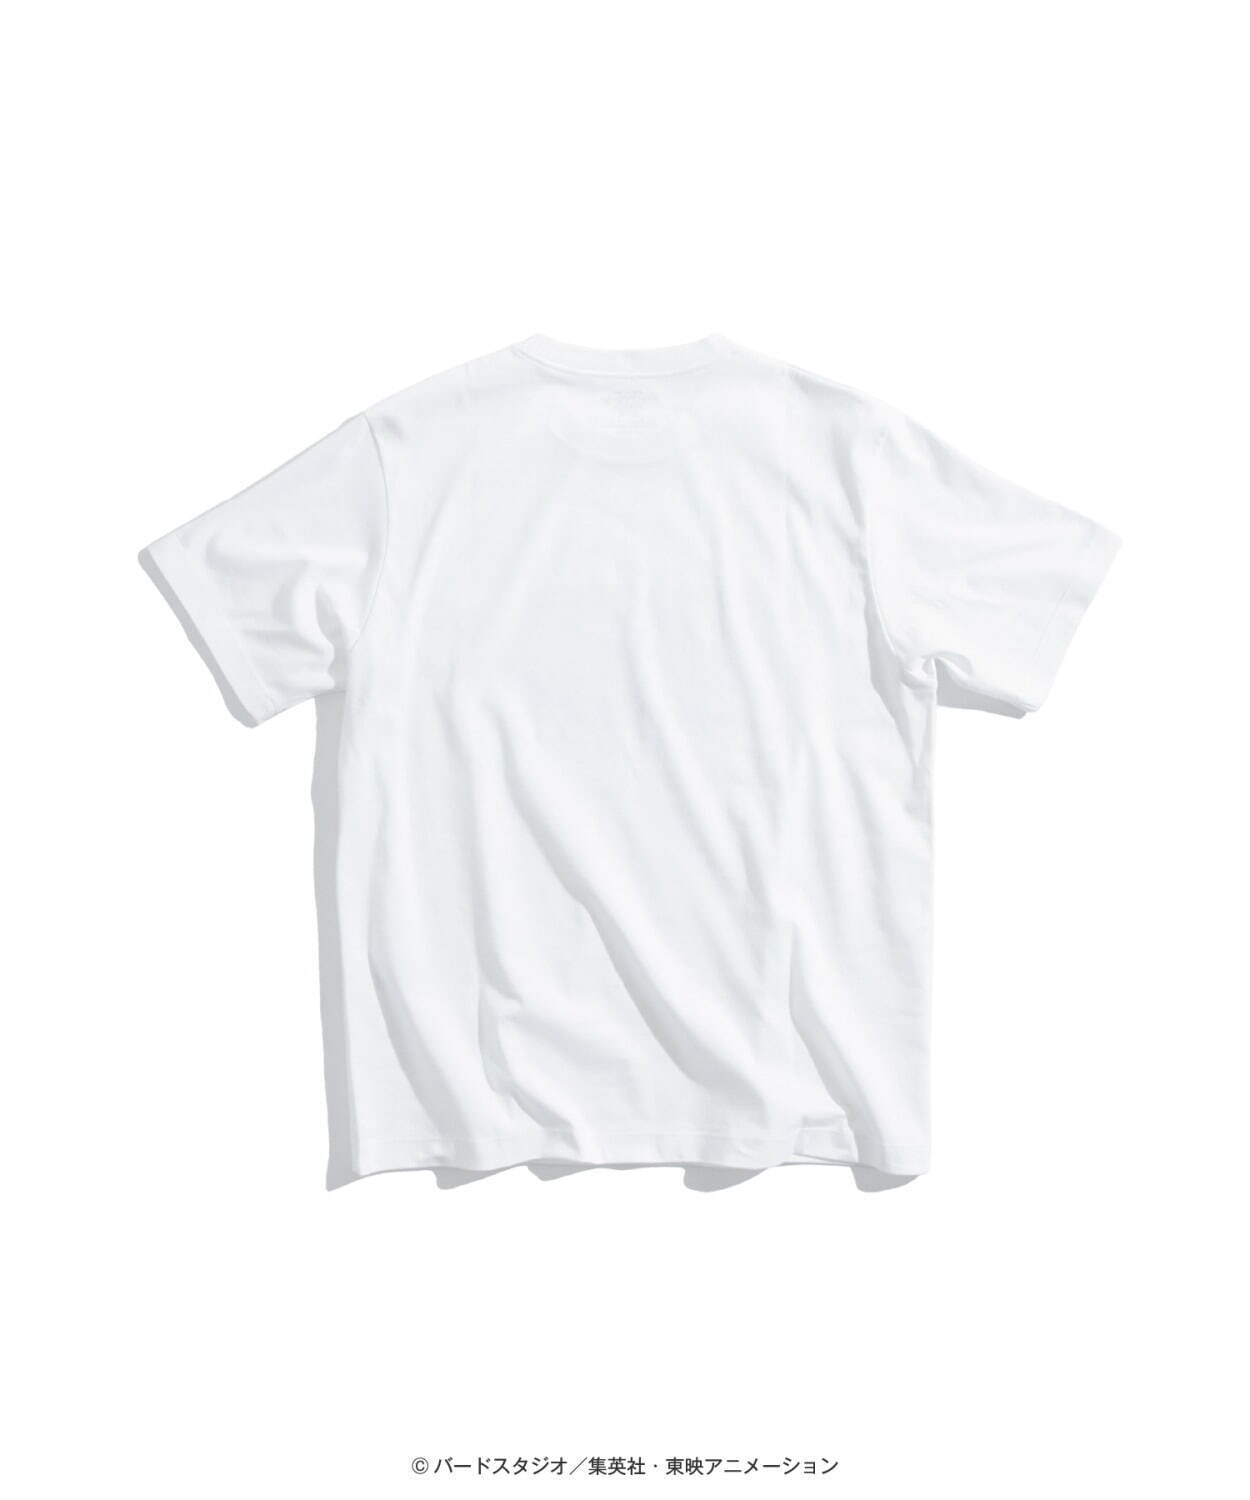 public tokyo ドラゴンボール　山水画悟空　Tシャツ　size2 Tシャツ/カットソー(半袖/袖なし) 品揃え豊富で